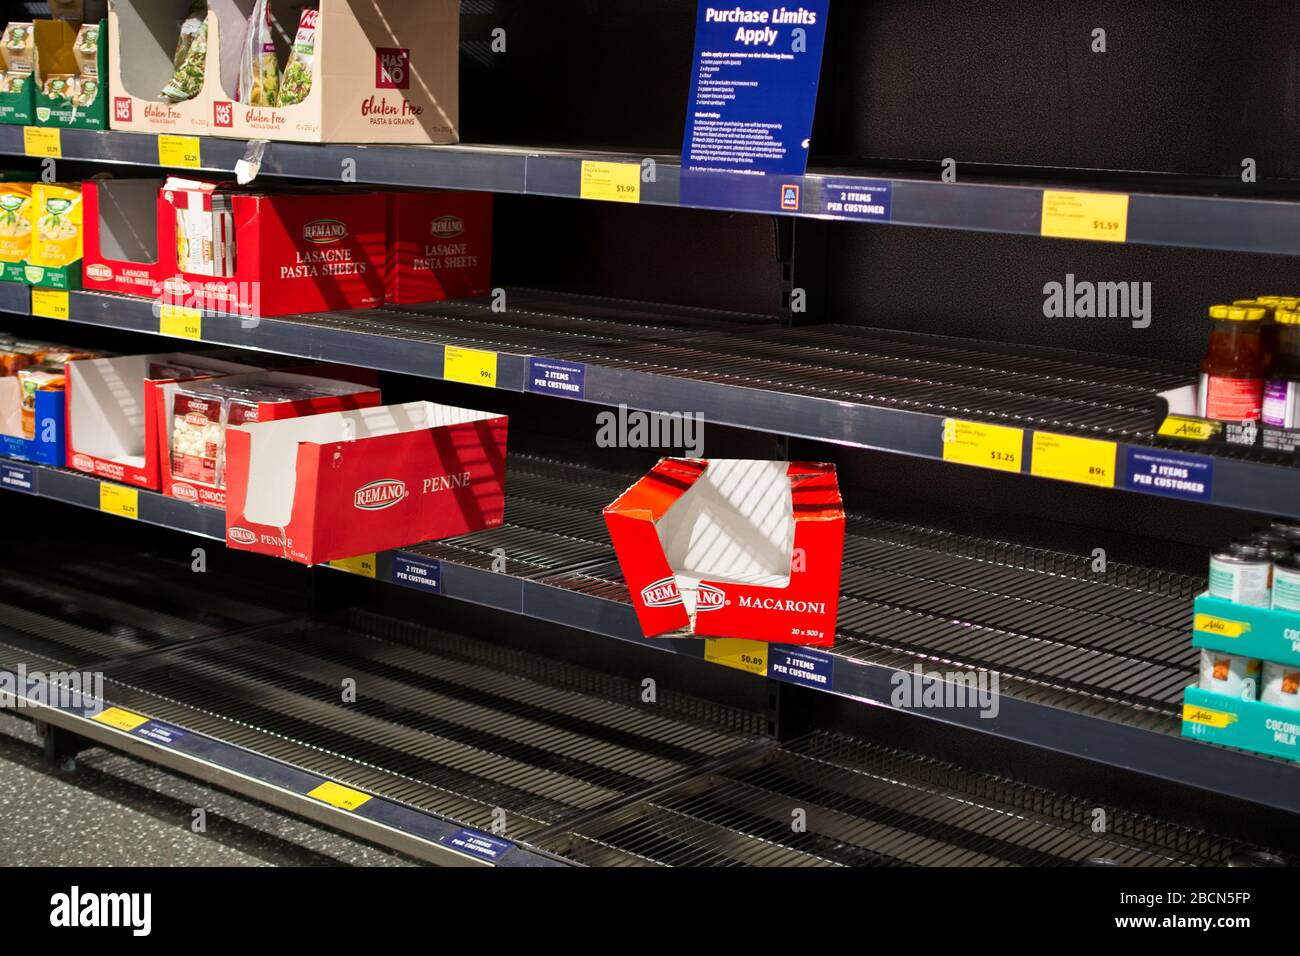 Caloundra, Queensland, Australie - 5 avril 2020: Les rayons vides des supermarchés en Australie après les achats de panique dus au coronavirus COVID-19. Banque D'Images